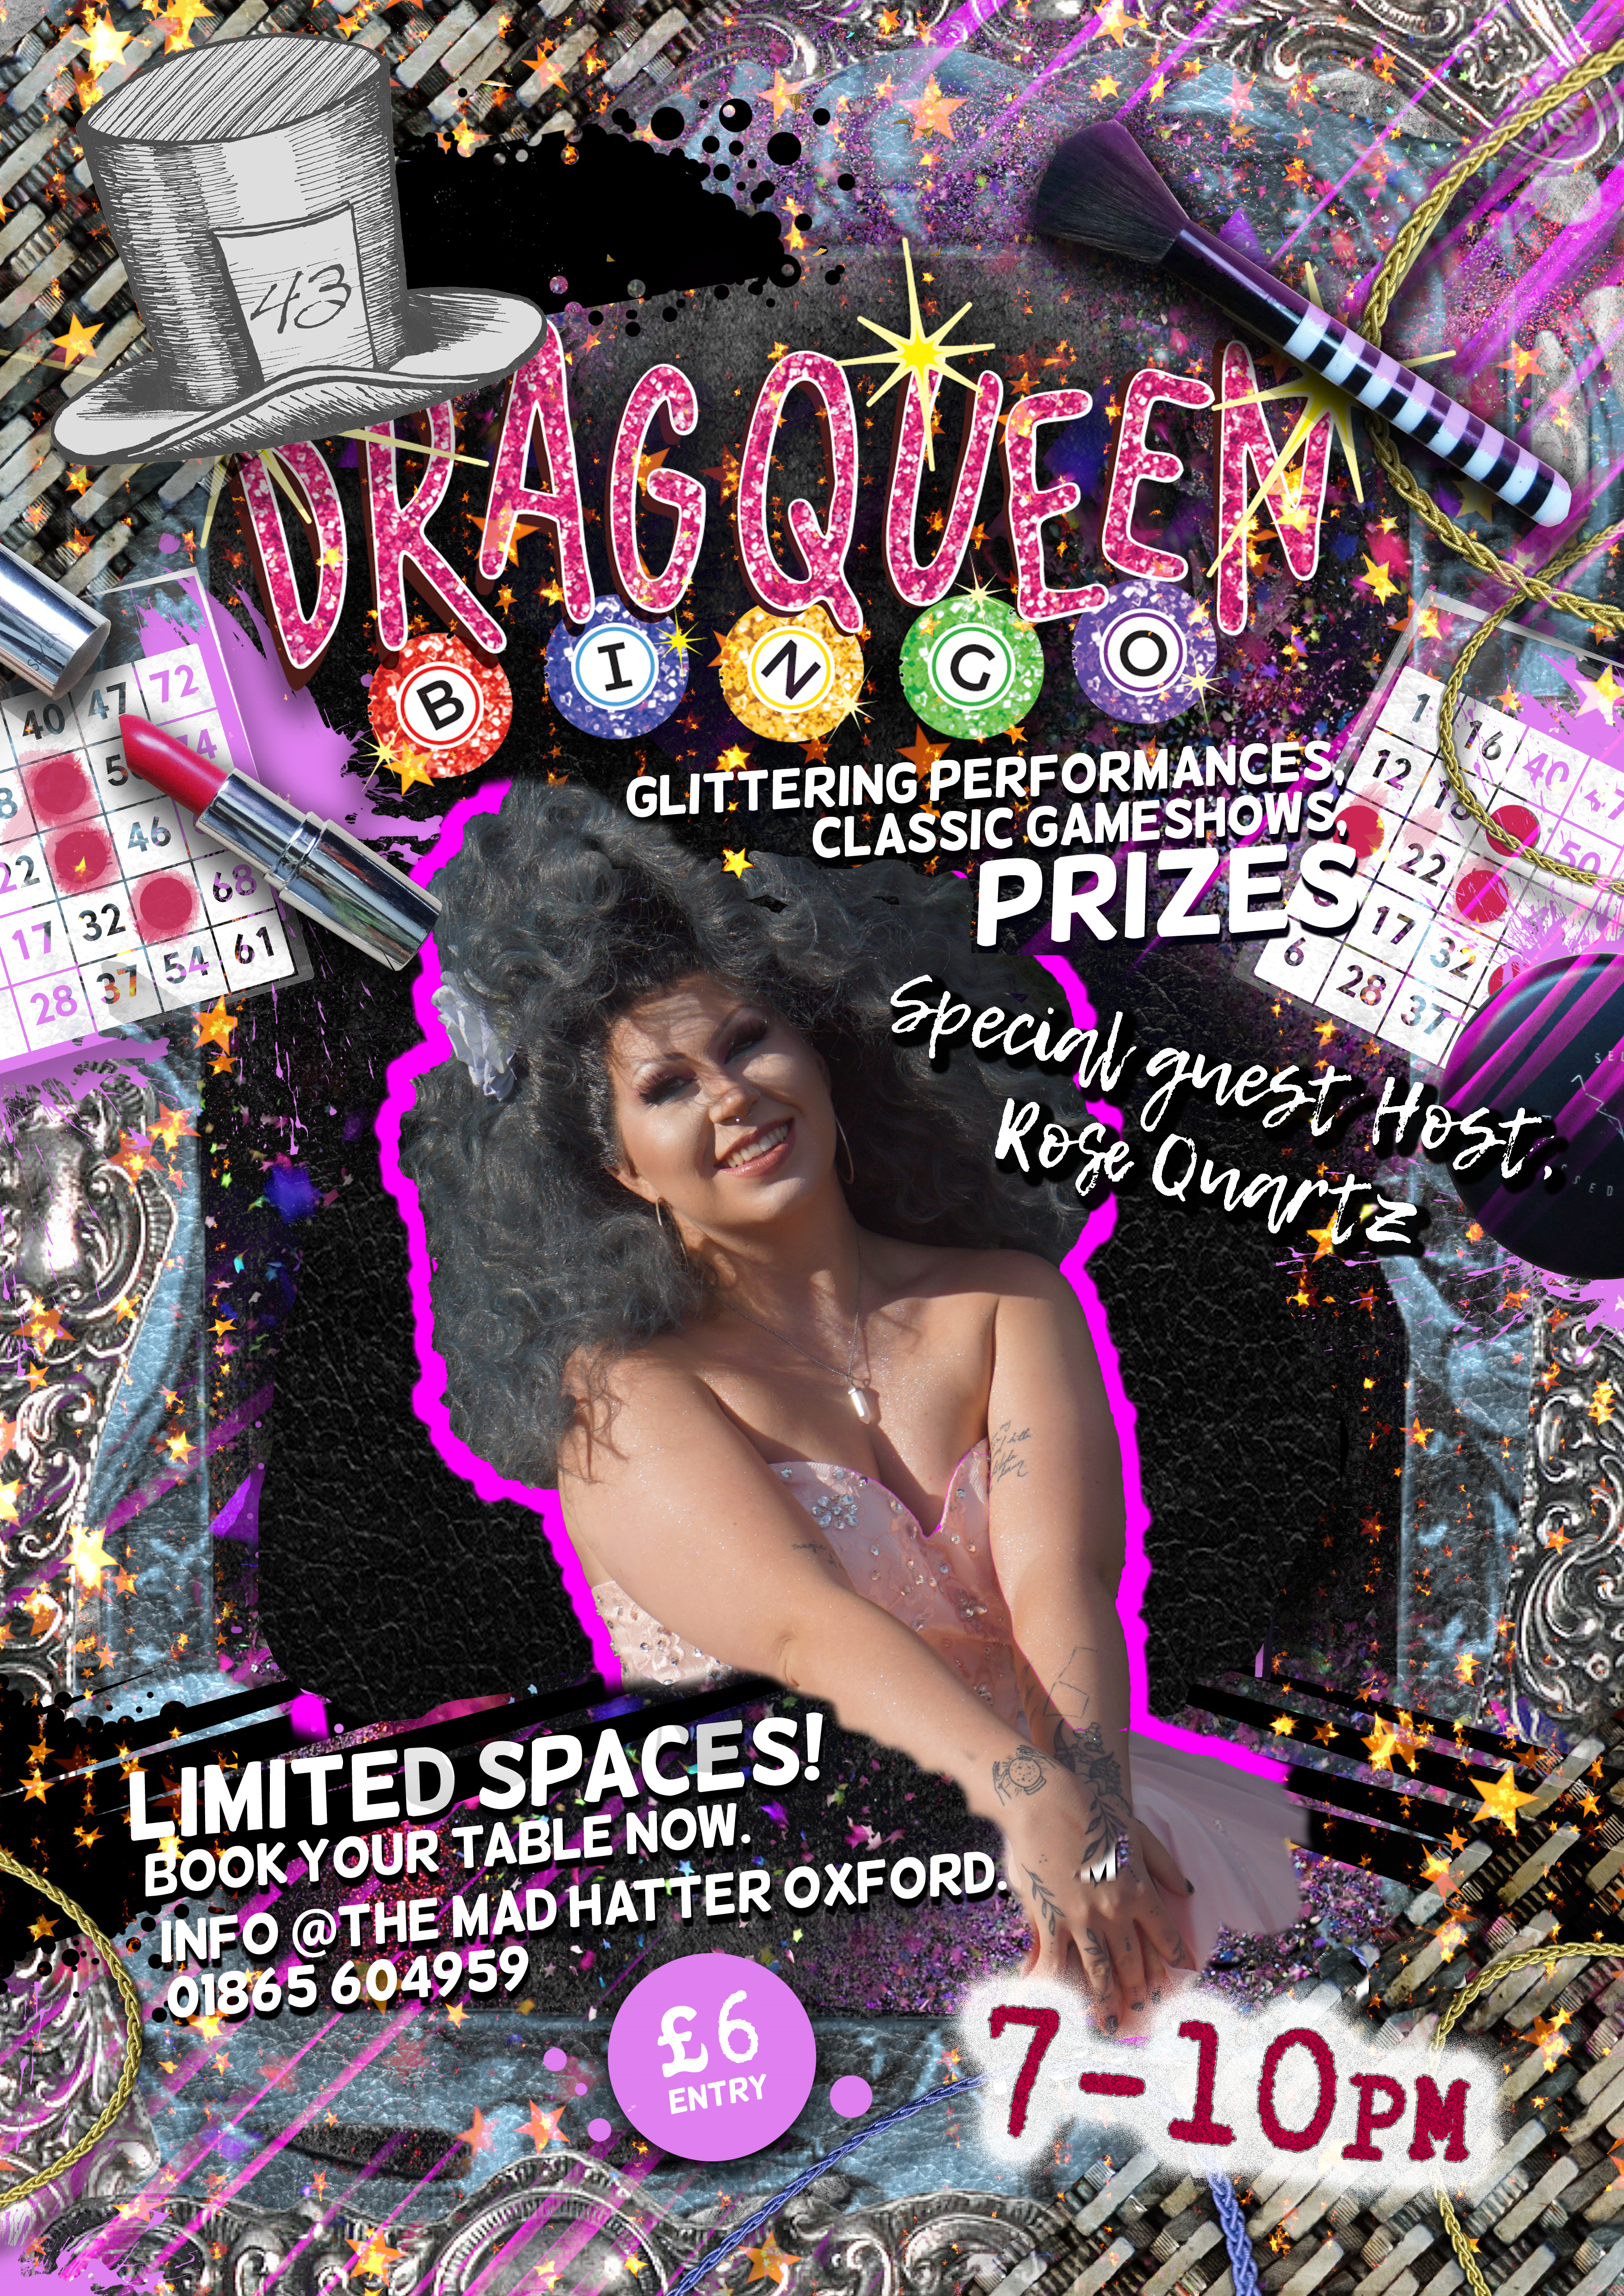 Drag Queen Bingo with Rose Quartz